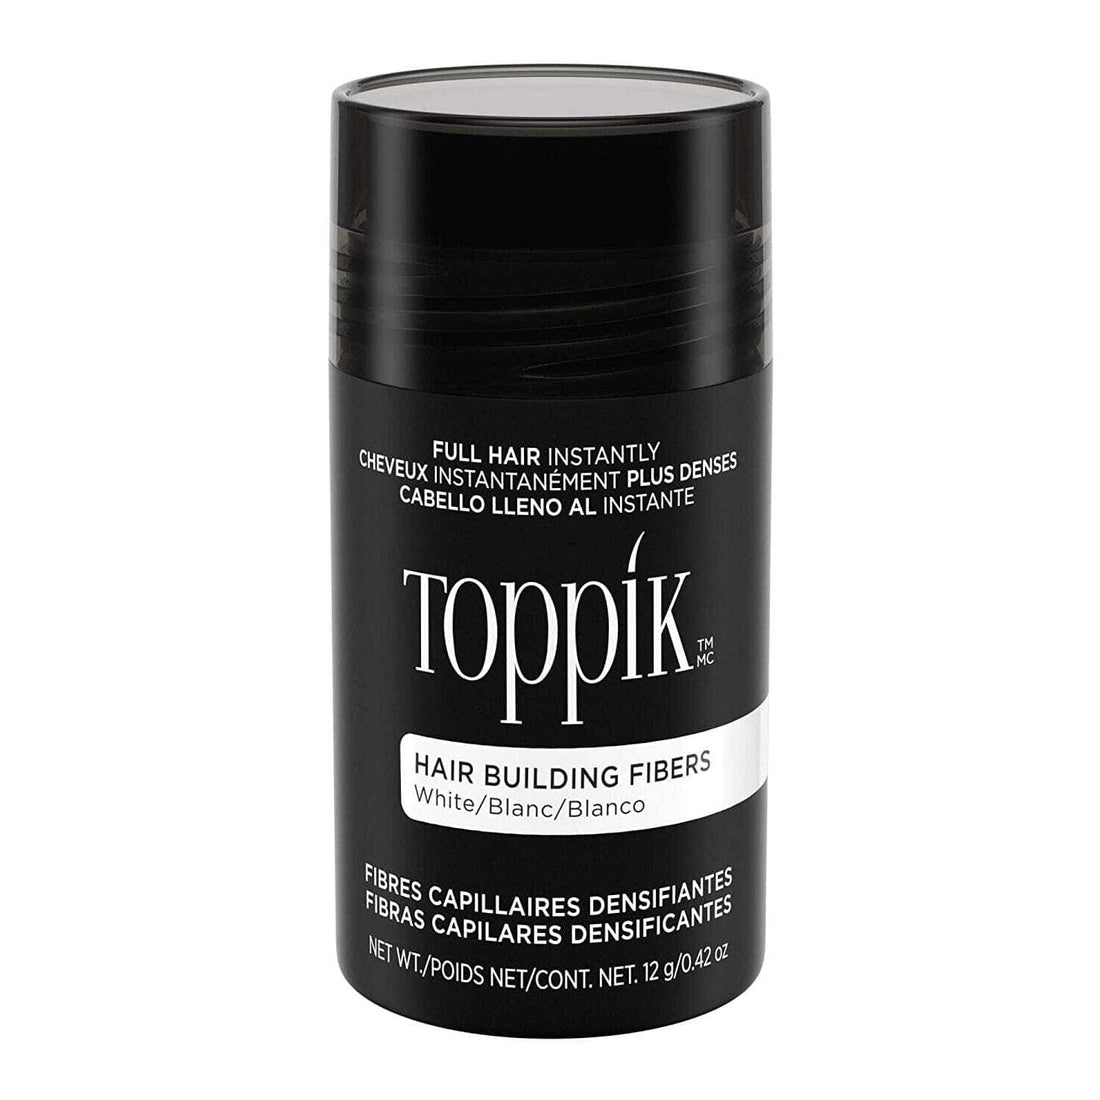 Toppik Hair Building Fibers - GRAY Hair Loss Concealers Toppik 0.42 oz Shop at Skin Type Solutions